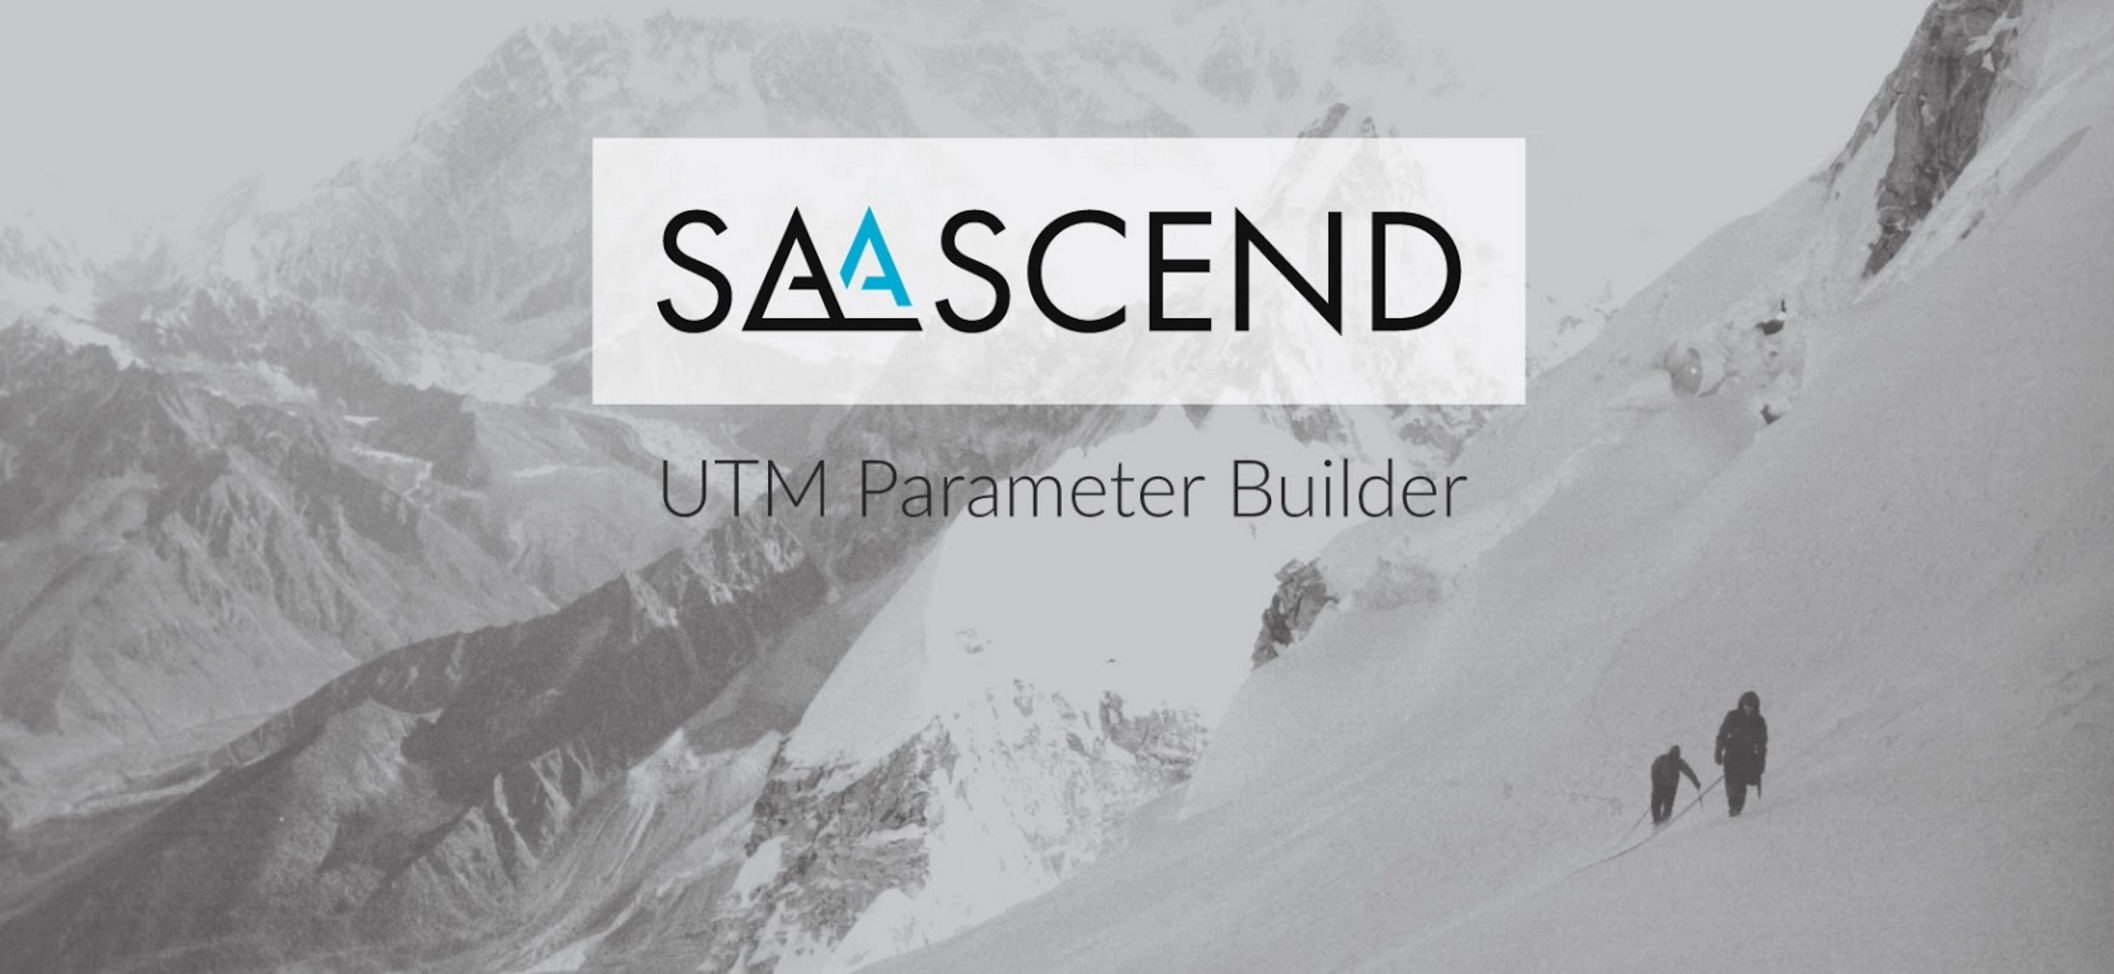 SaaScend - UTM Parameter Builder